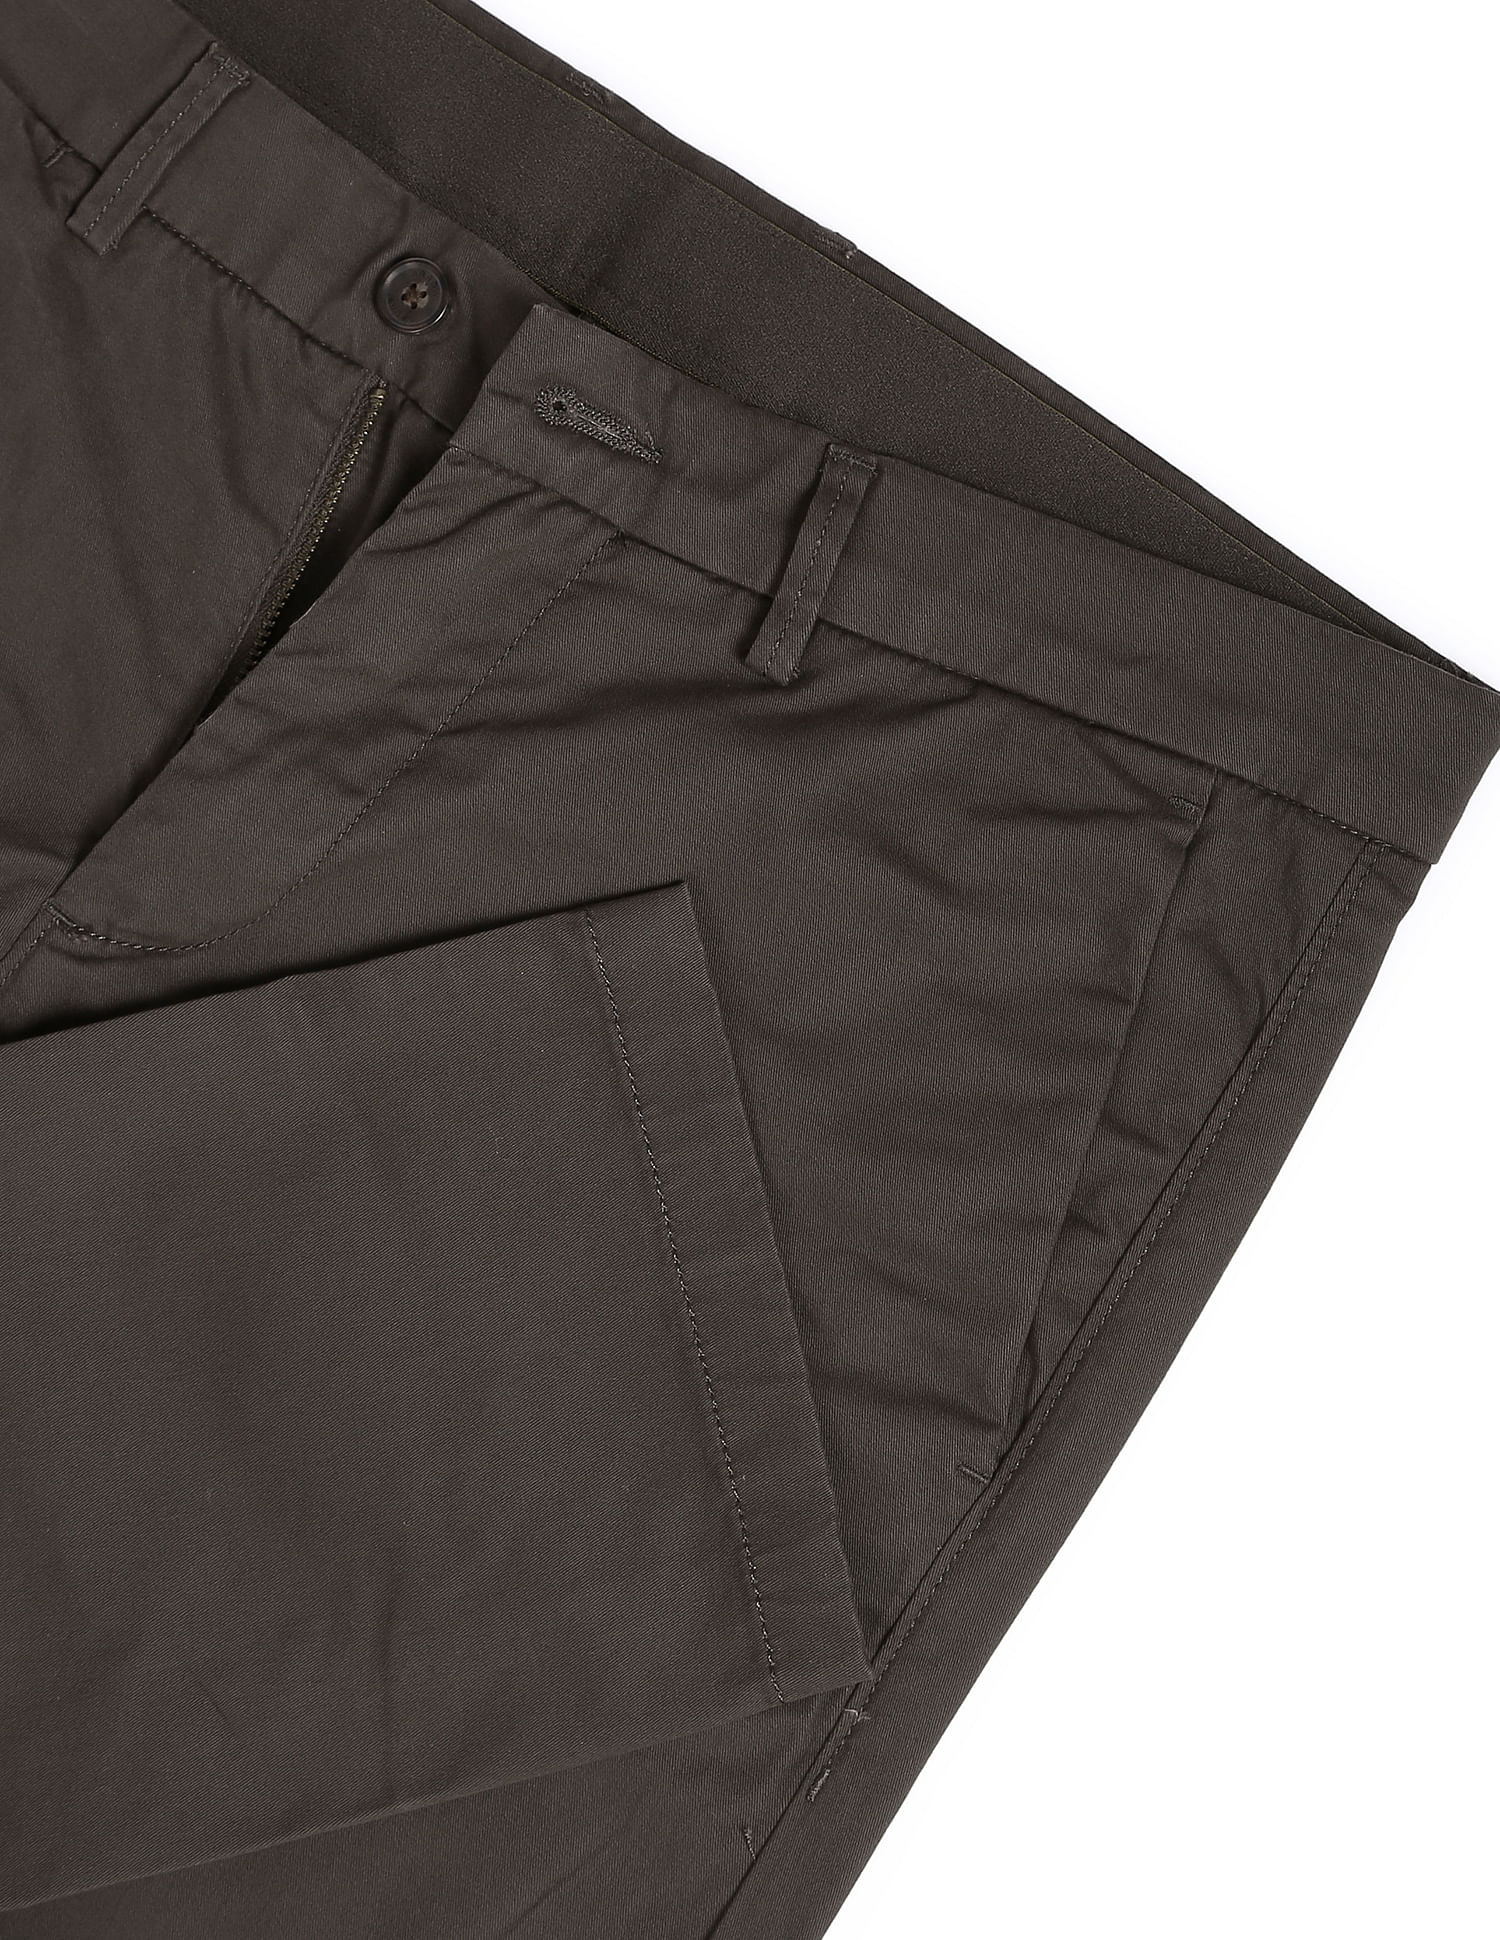 ELANHOOD Formal Trousers For Men's Dark Grey Formal Pant Trouser